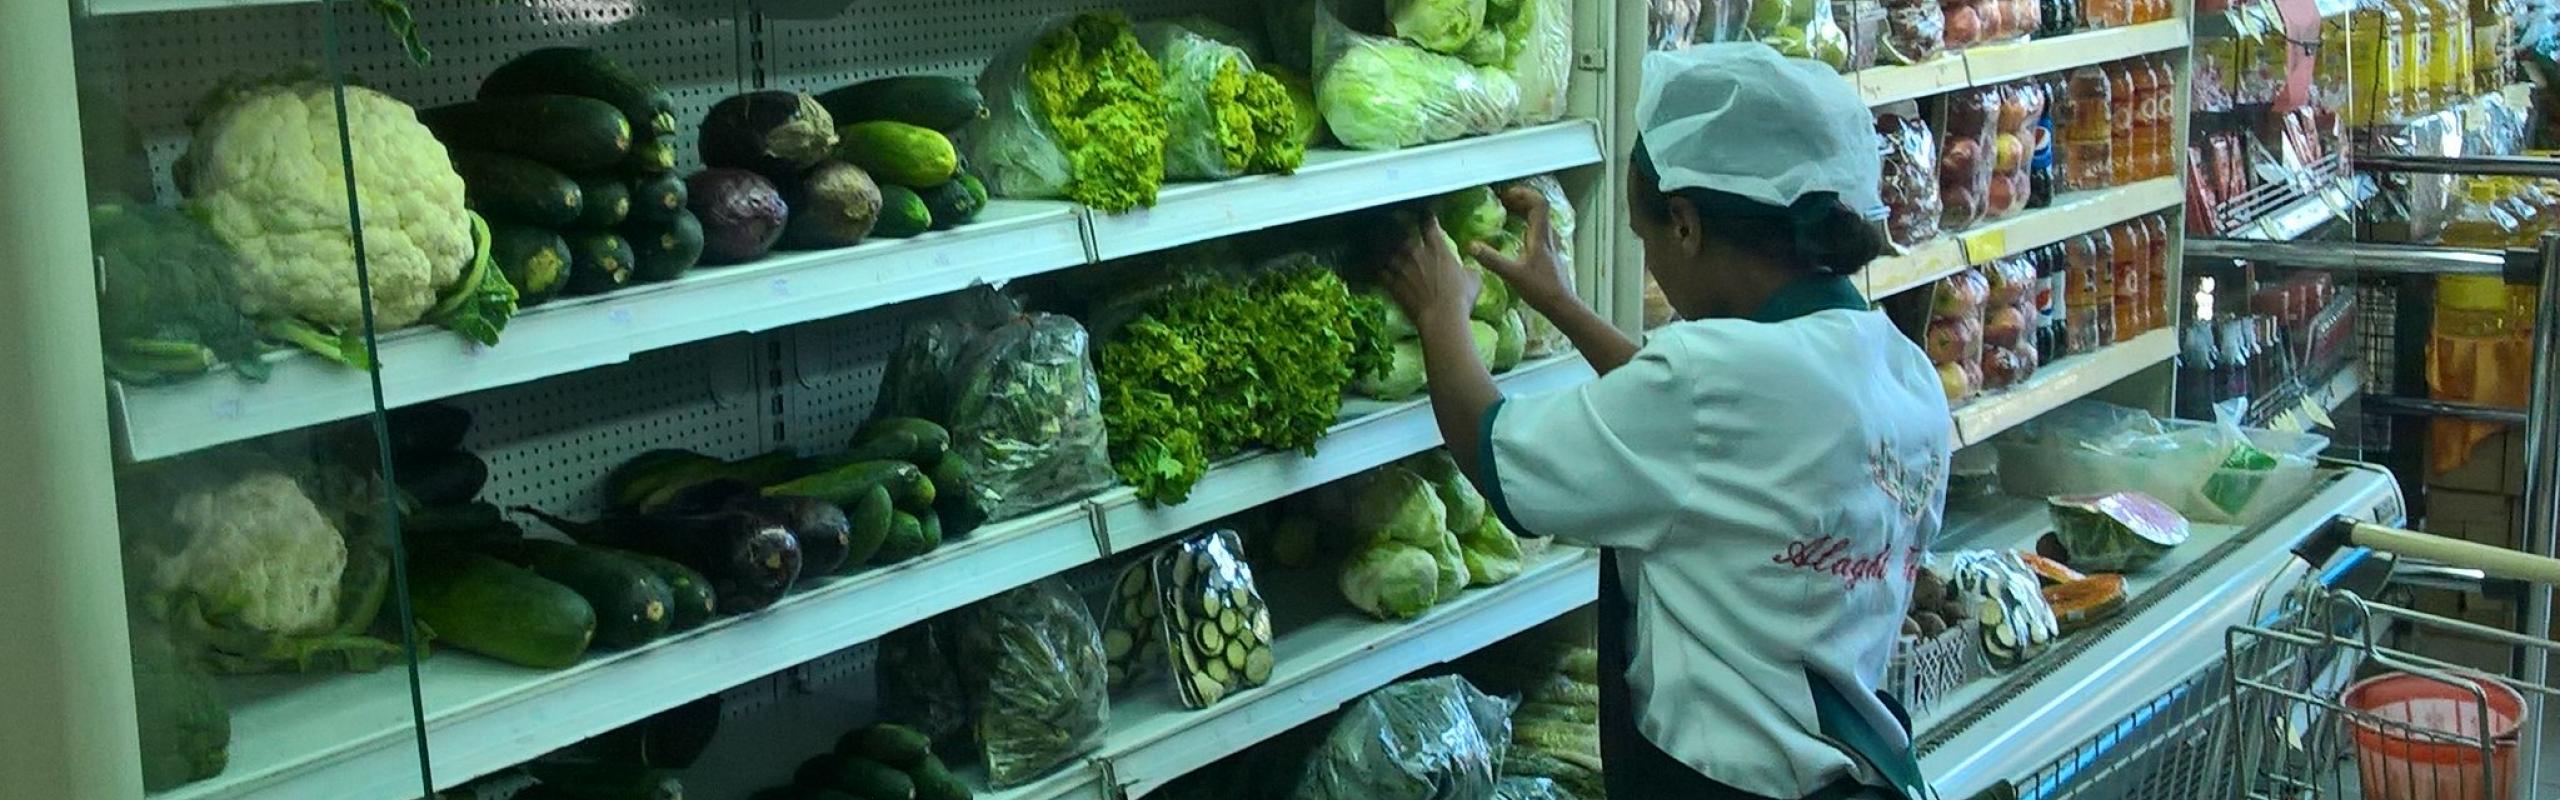  Un travailleur organise des légumes sur une étagère dans un supermarché à Addis-Abeba, en Éthiopie